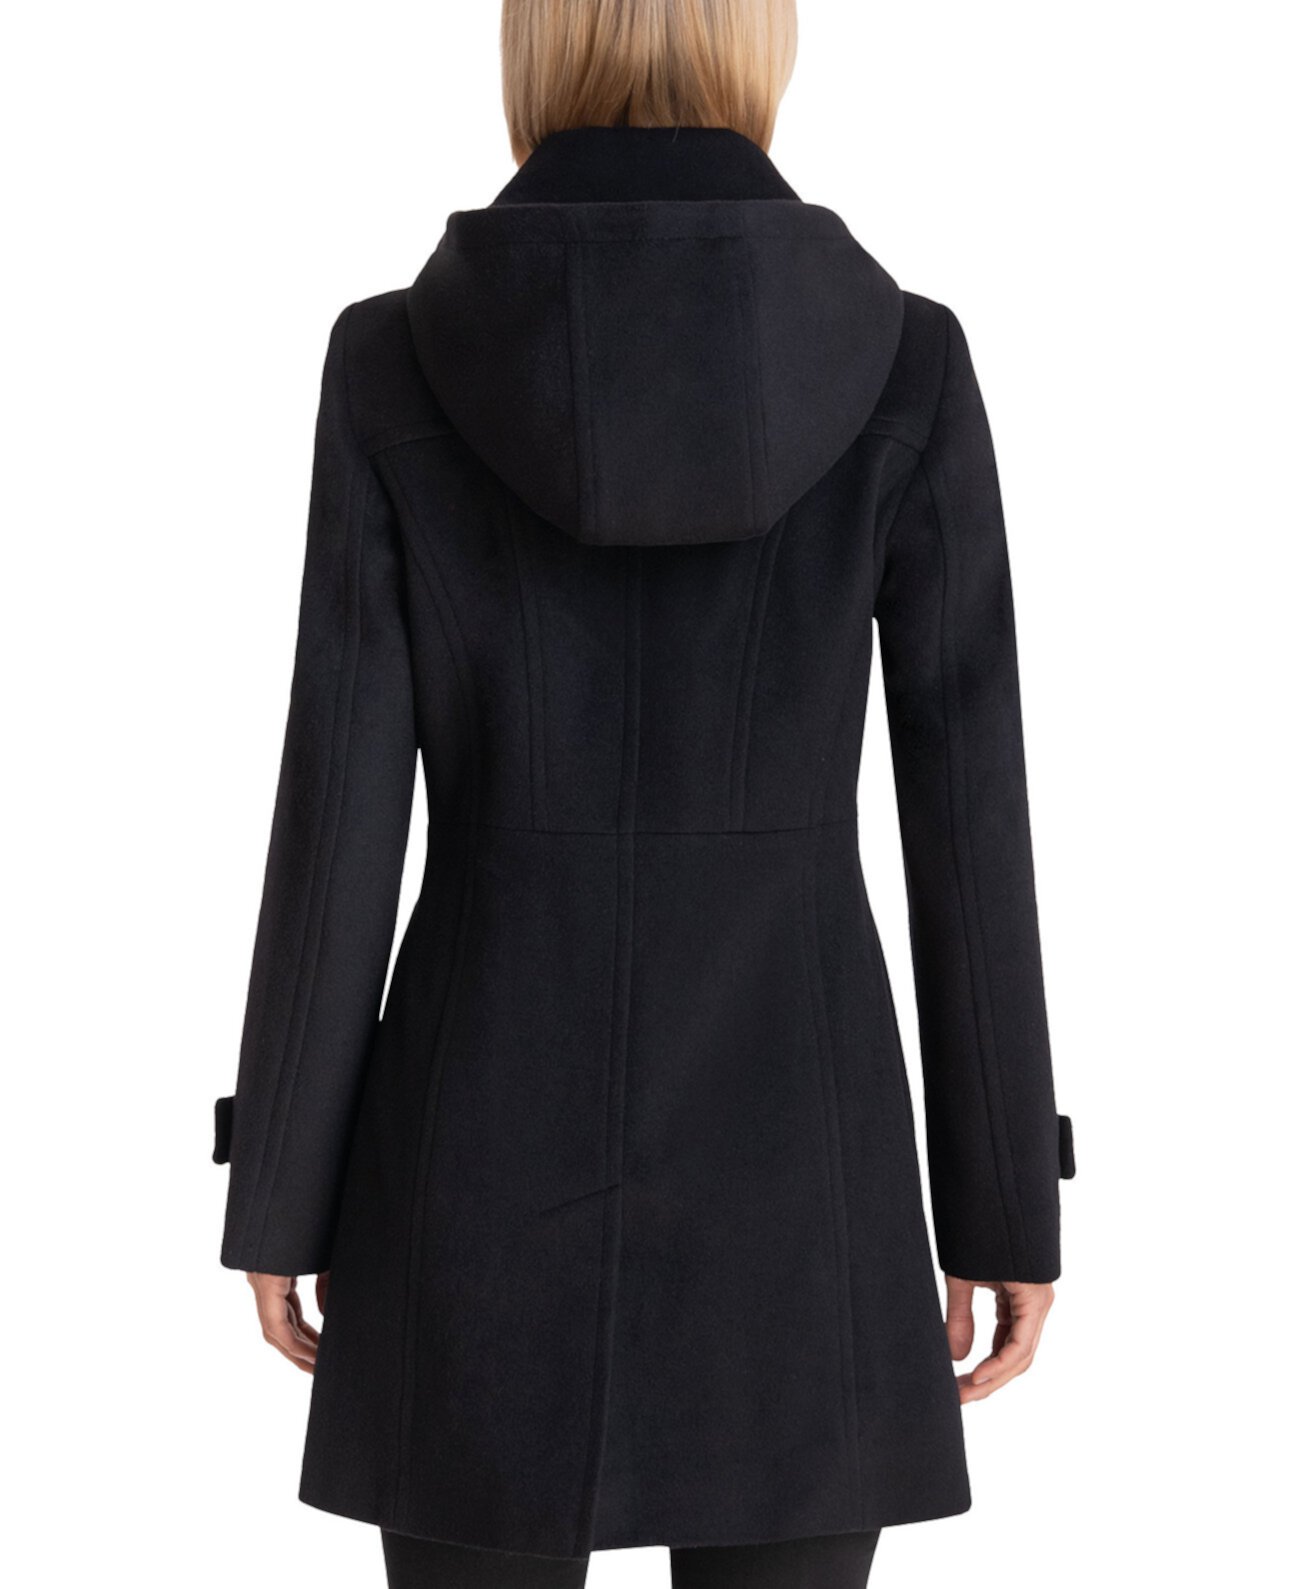 Женское миниатюрное пальто с капюшоном и воротником-стойкой, созданное для Macy's Michael Kors